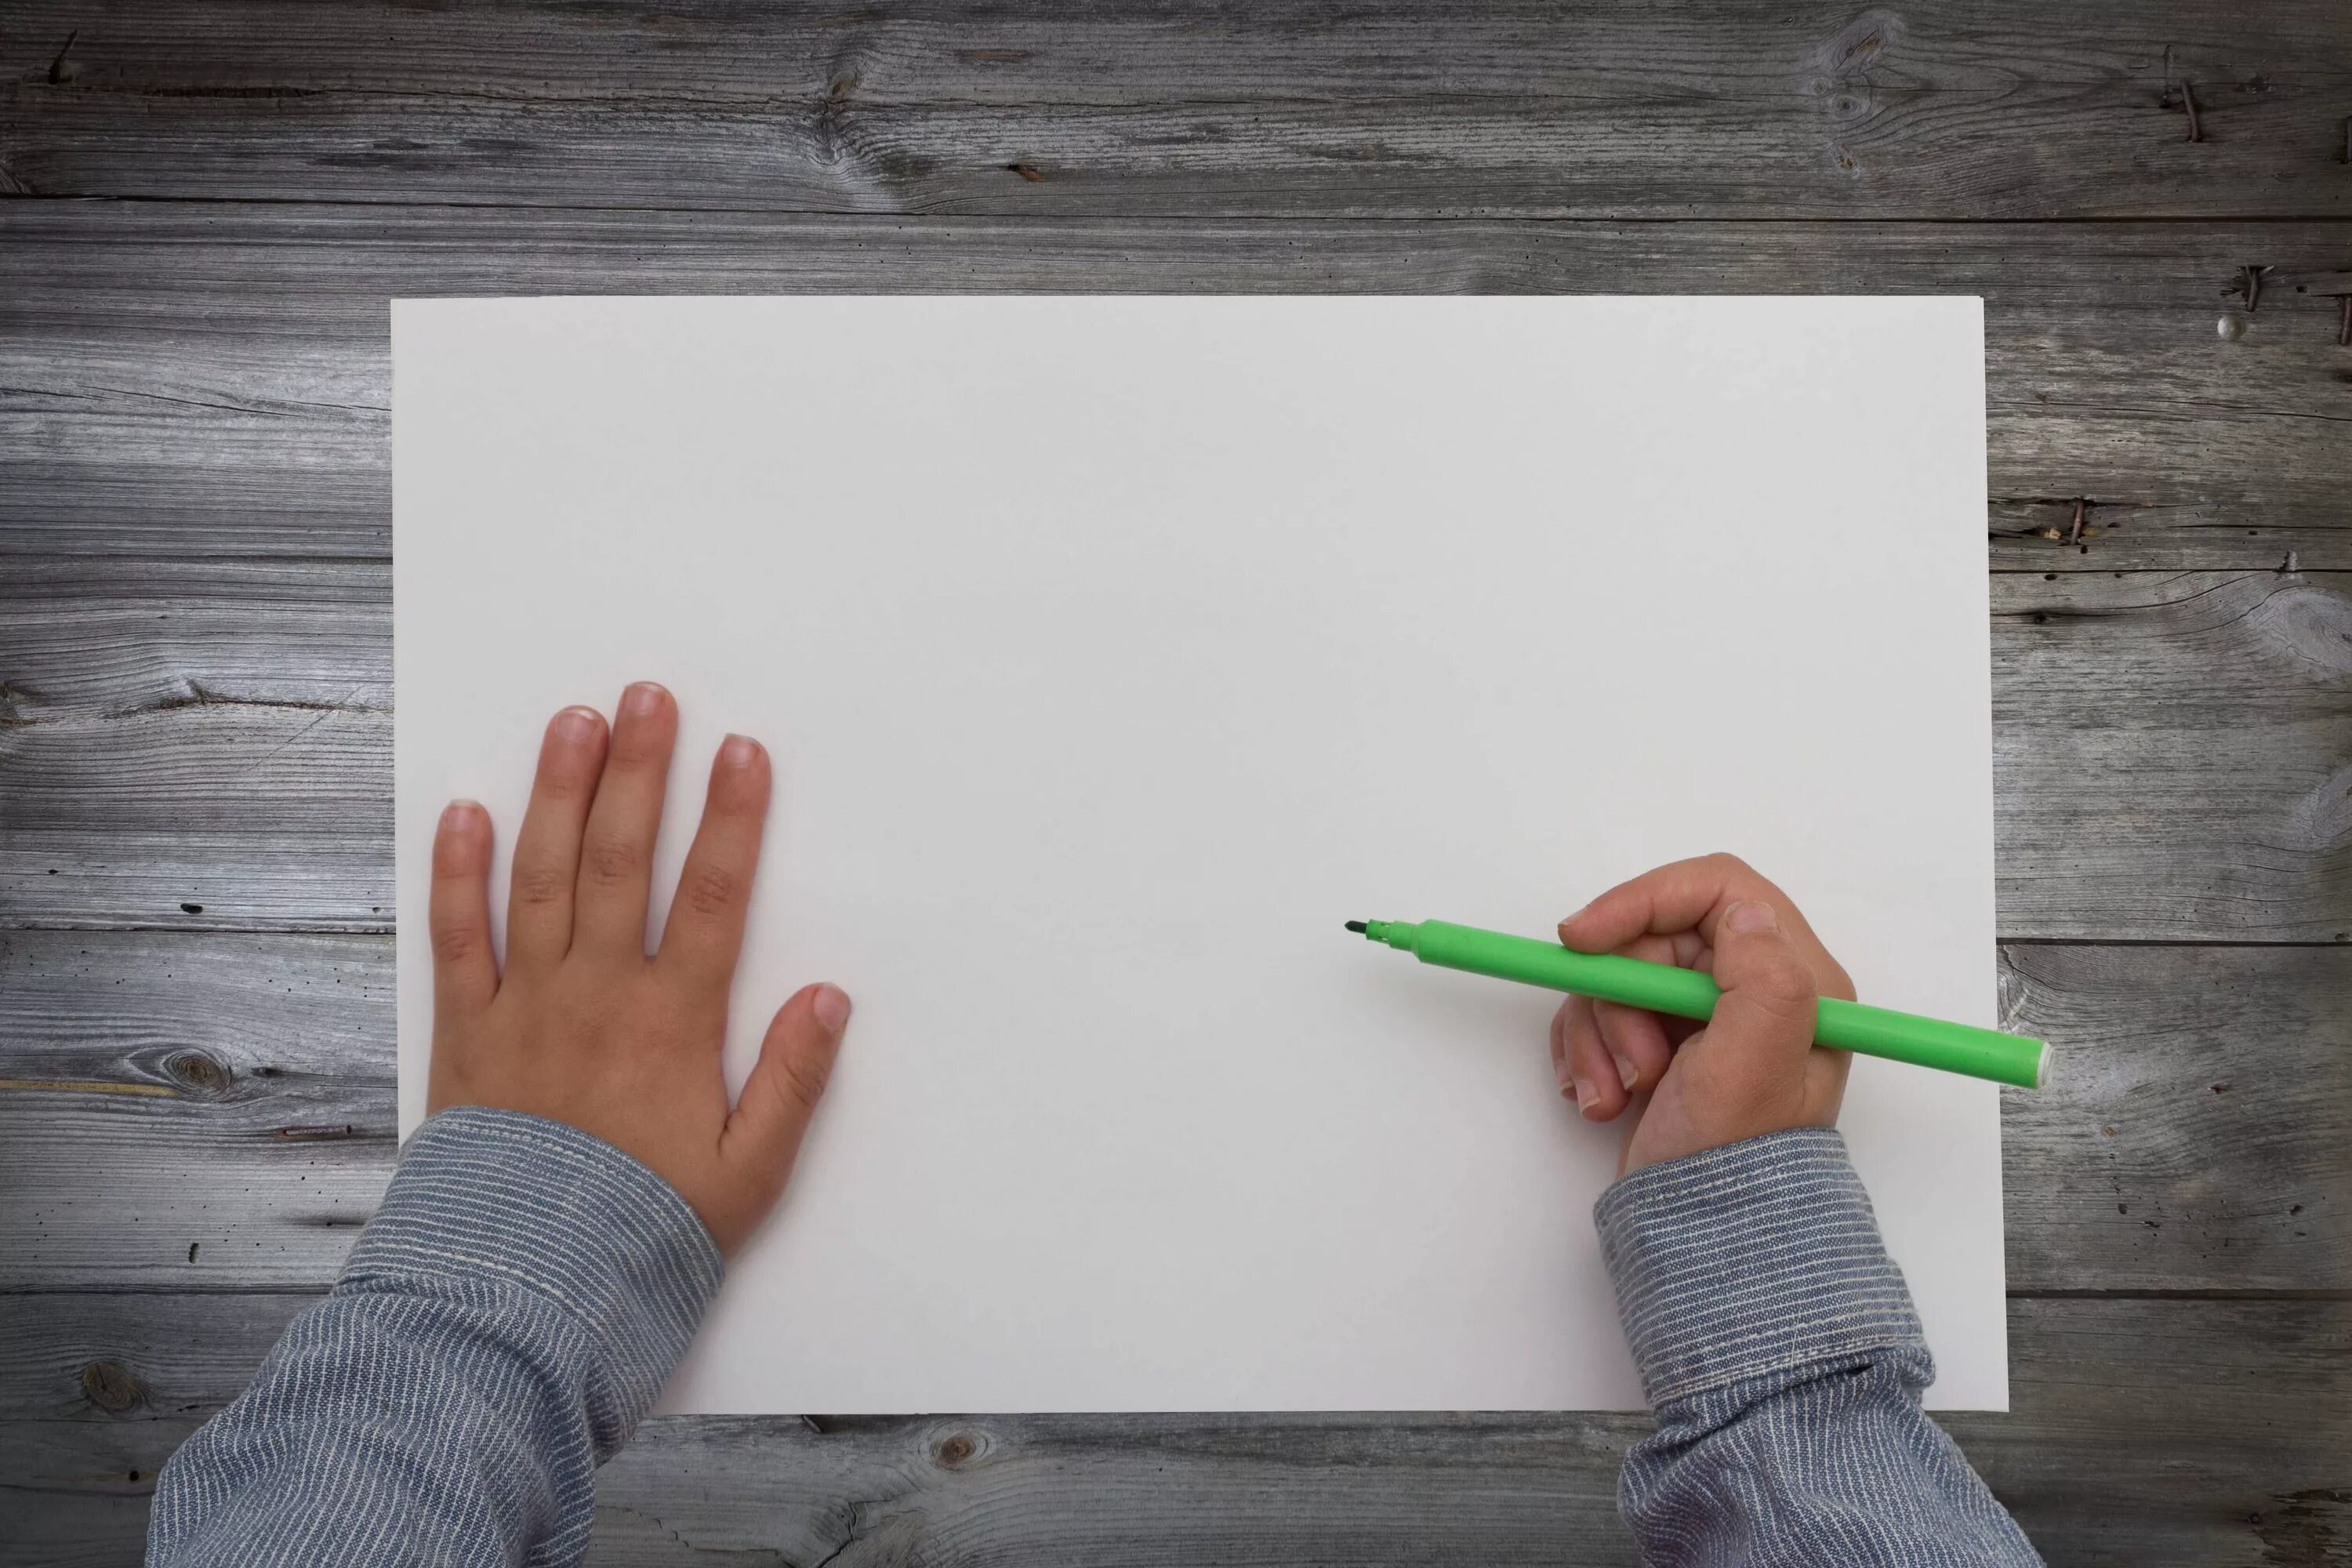 Над бумажным над листом. Ребенок с листом бумаги. Лист бумаги в руке. Лист в руке. Чистый лист бумаги и маркер.